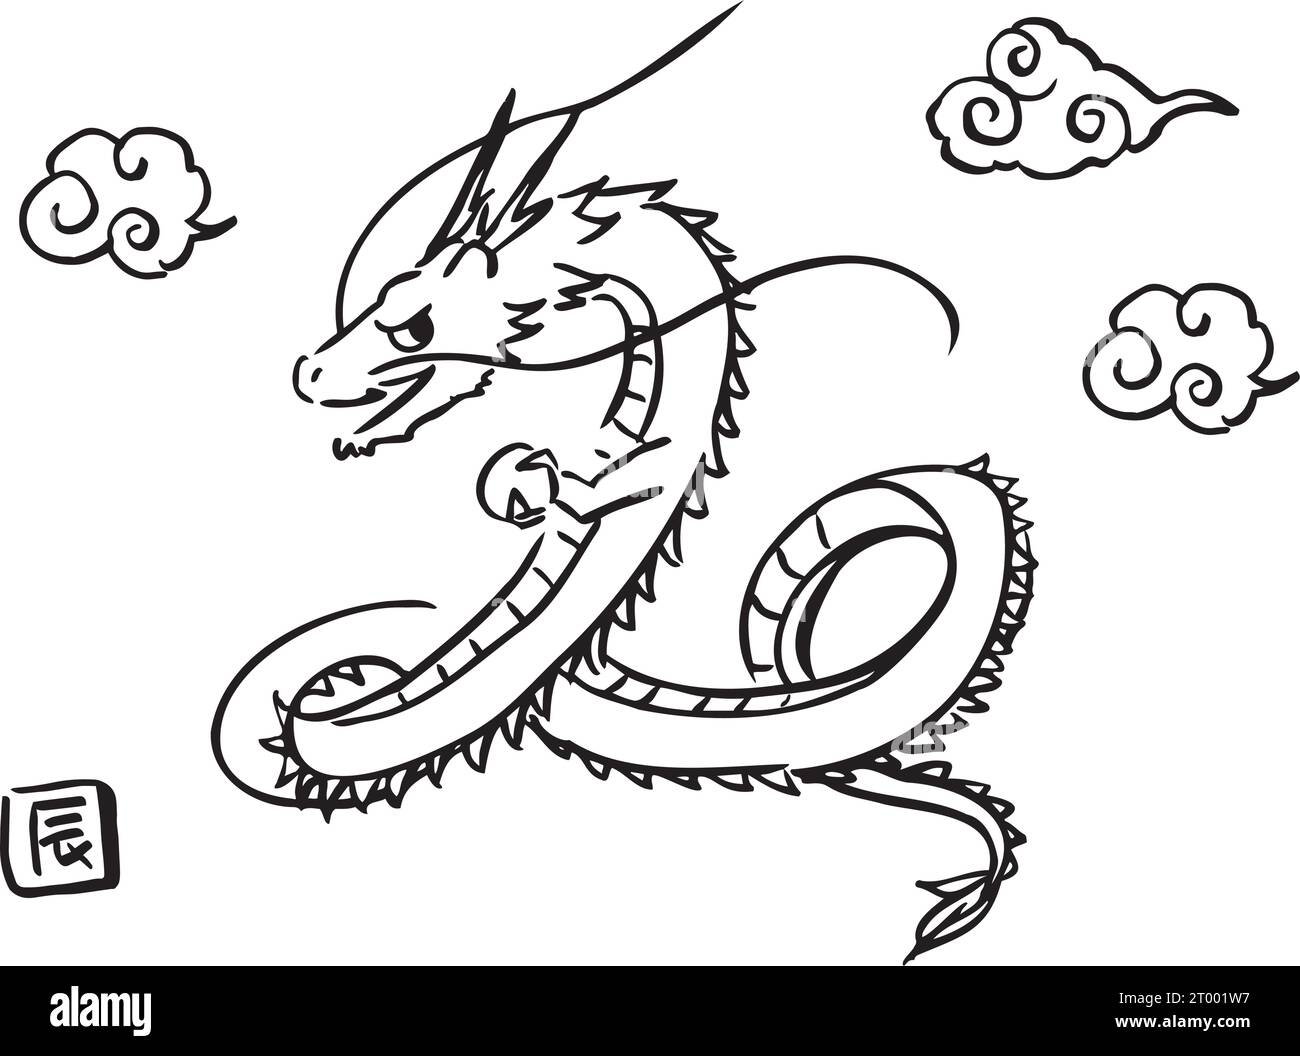 Immagine di un drago che vola nel cielo. Materiale cartoncino di Capodanno per l'anno del Drago. Illustrazione Vettoriale